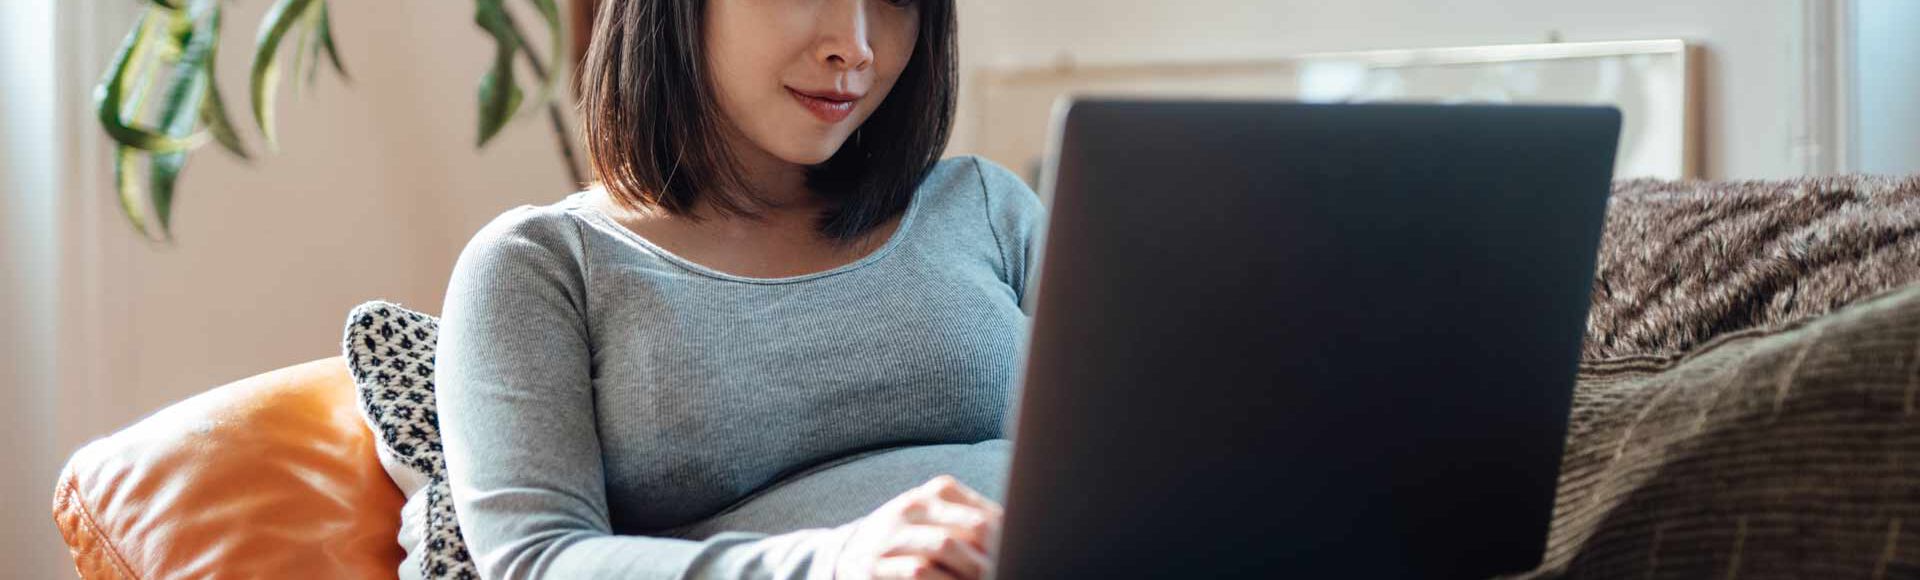 Mulher grávida mexendo no computador